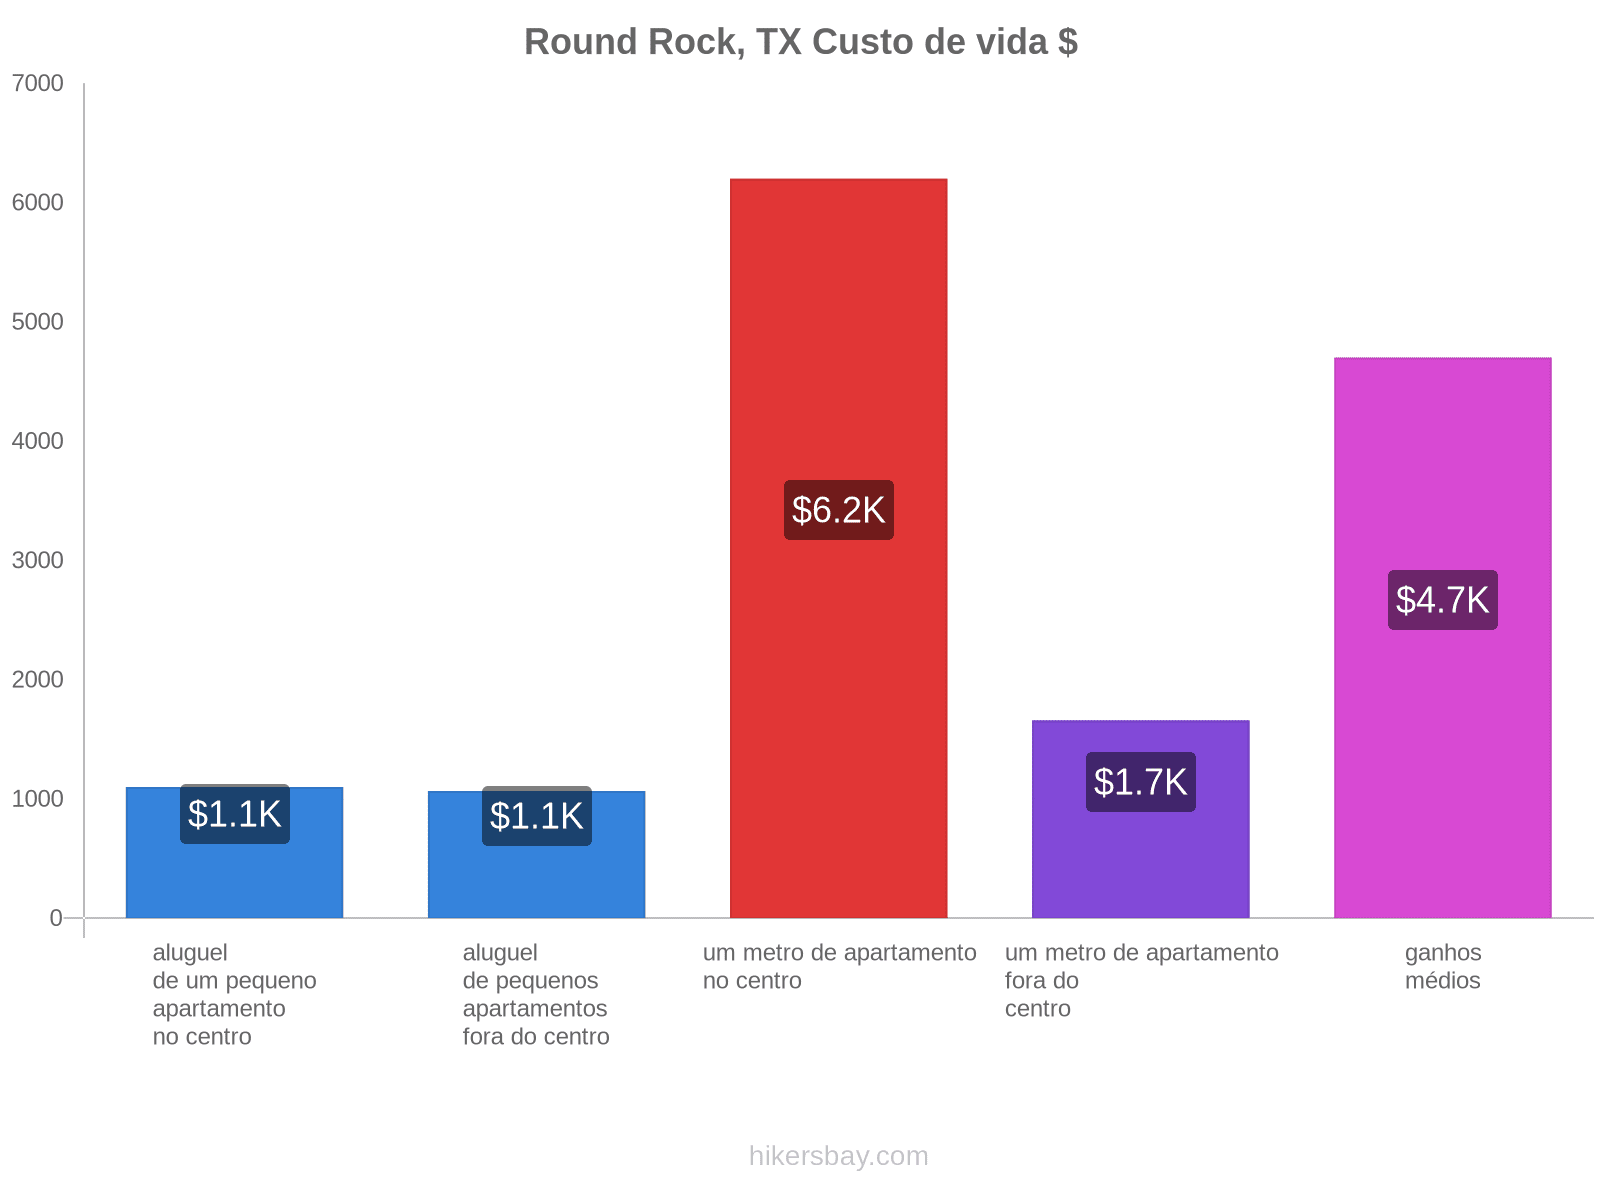 Round Rock, TX custo de vida hikersbay.com